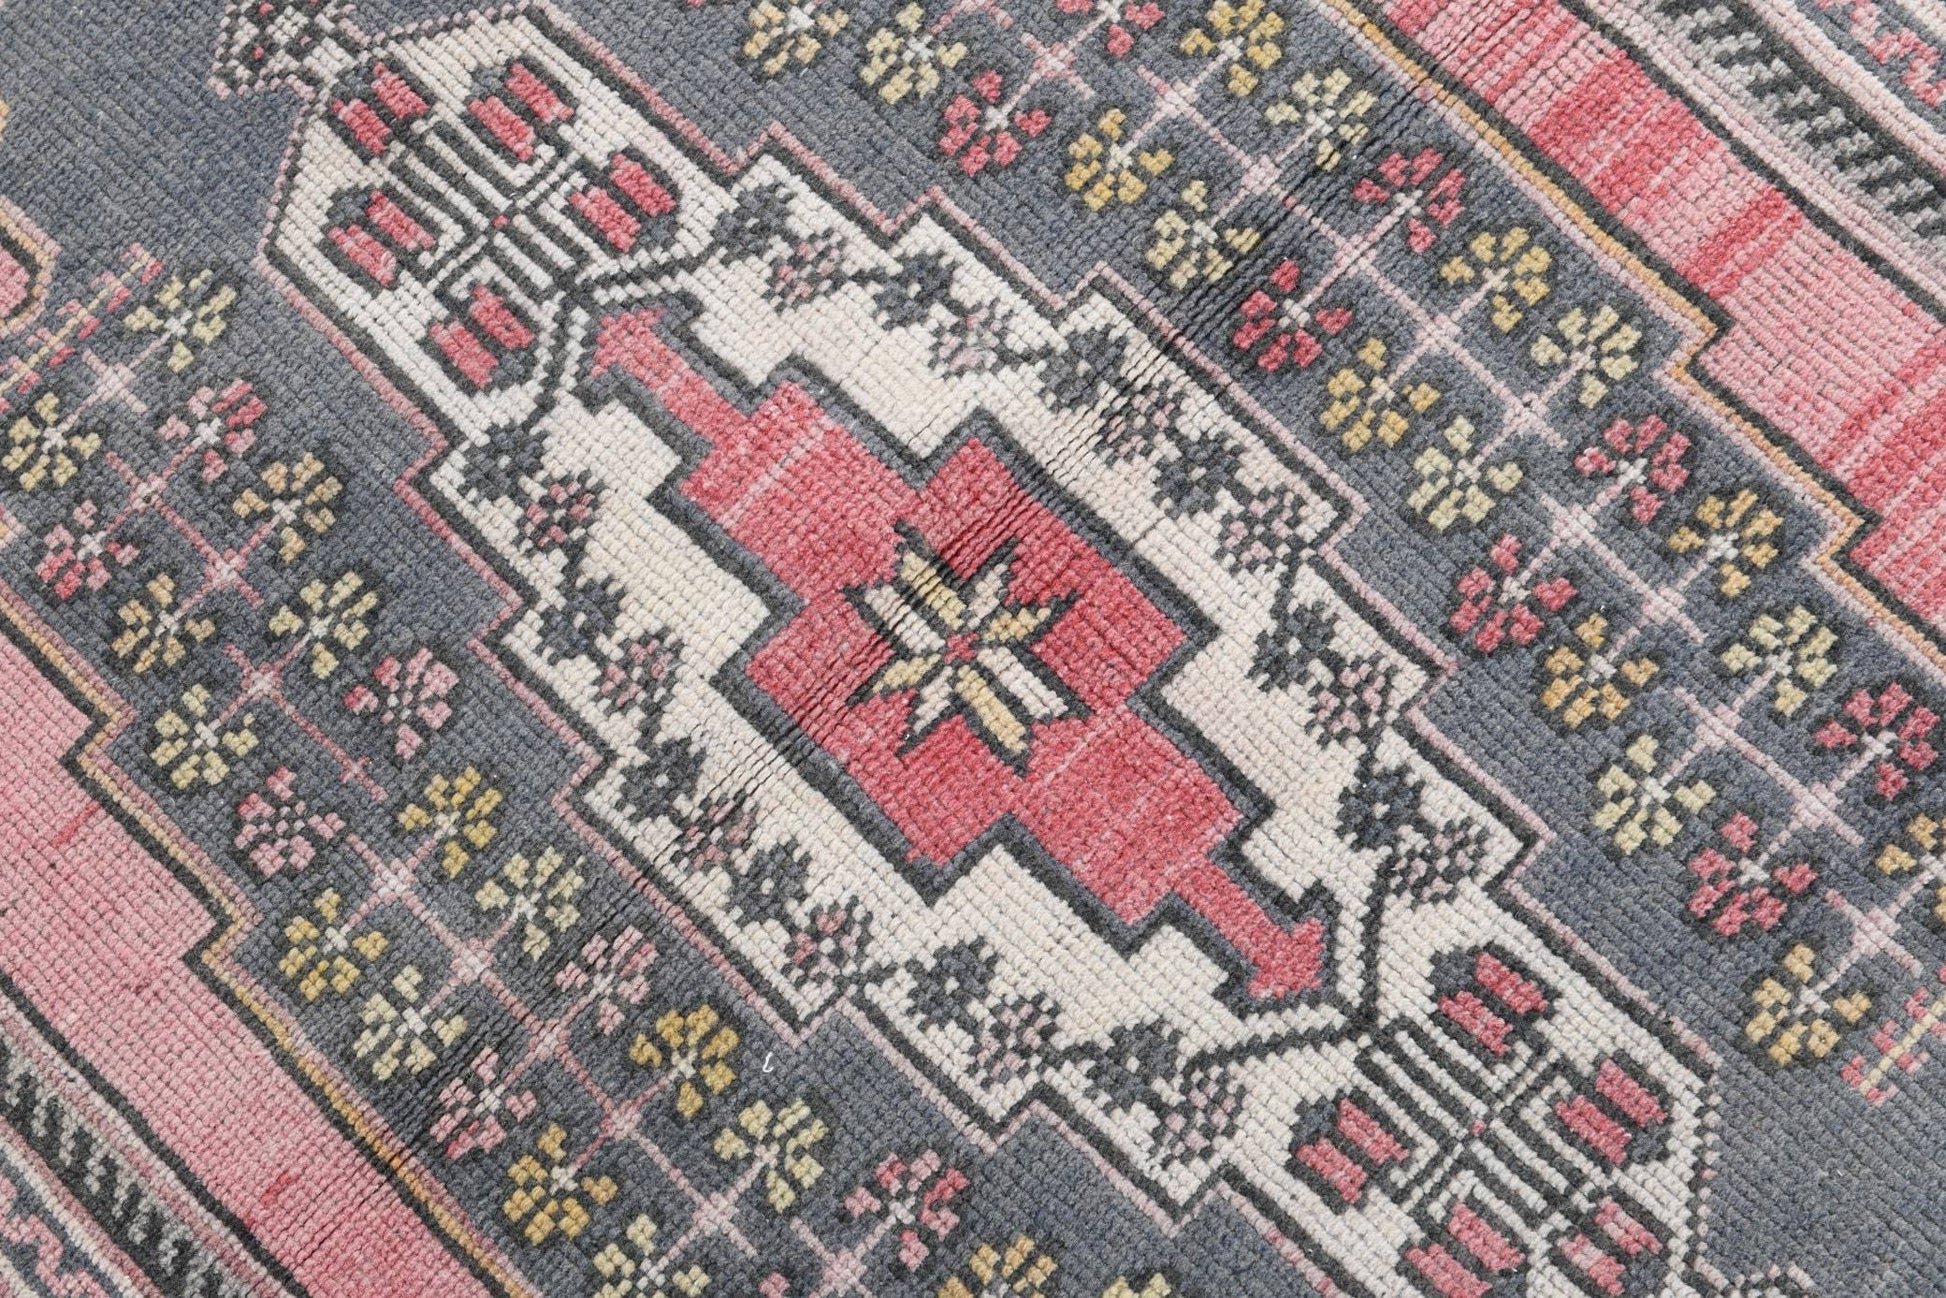 4' x 7' Pink Turkish Vintage Rug  |  RugReform